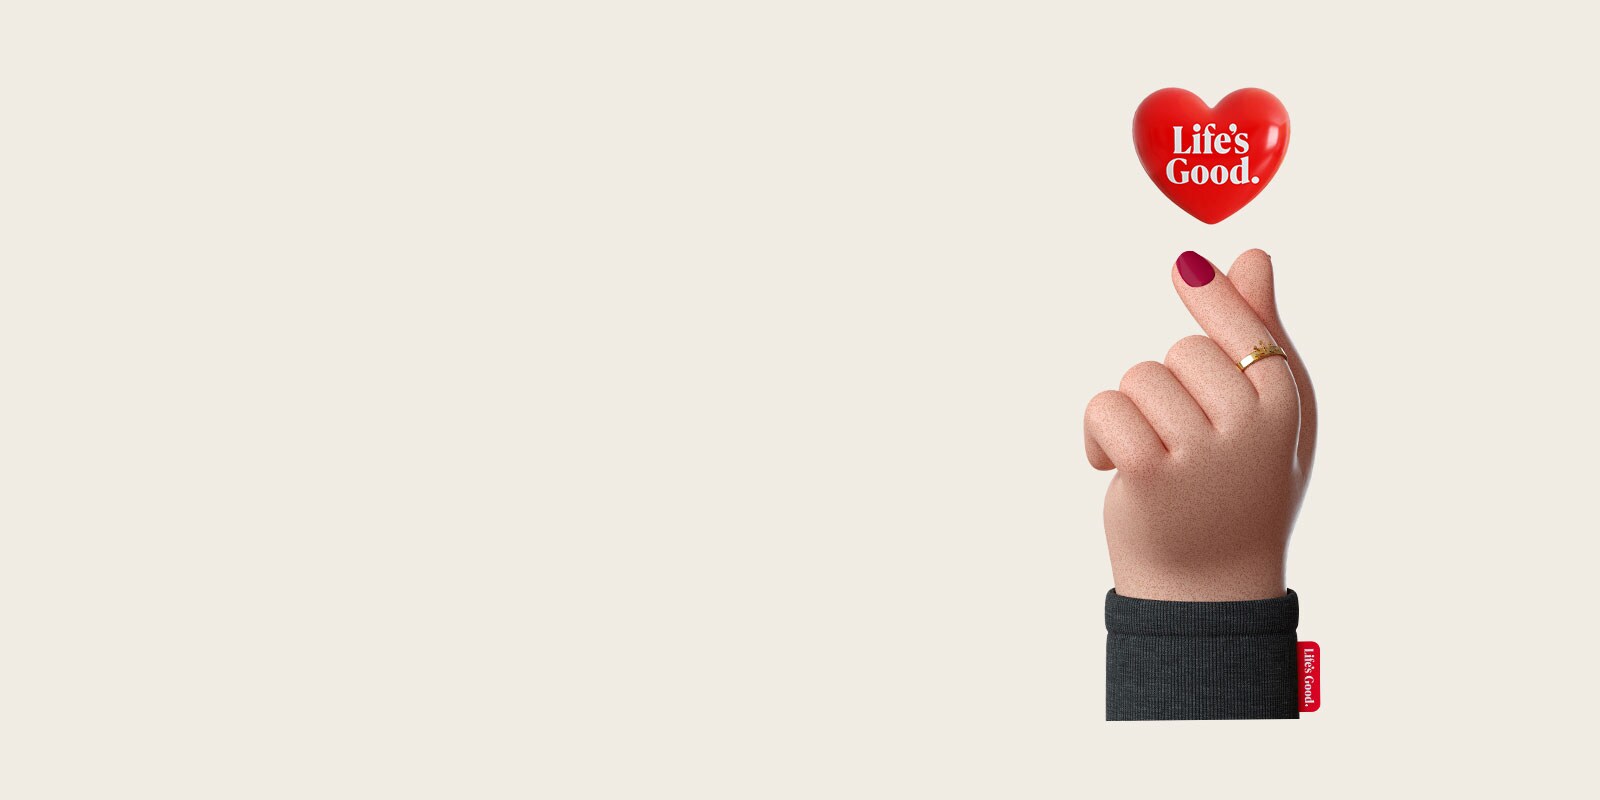 Ένα ψηφιακό χέρι σχηματίζει μια καρδιά με τον αντίχειρα και τον δείκτη, και πάνω από τη χειρονομία εμφανίζεται μια κόκκινη καρδιά με το λογότυπο «Life’s Good» της LG.